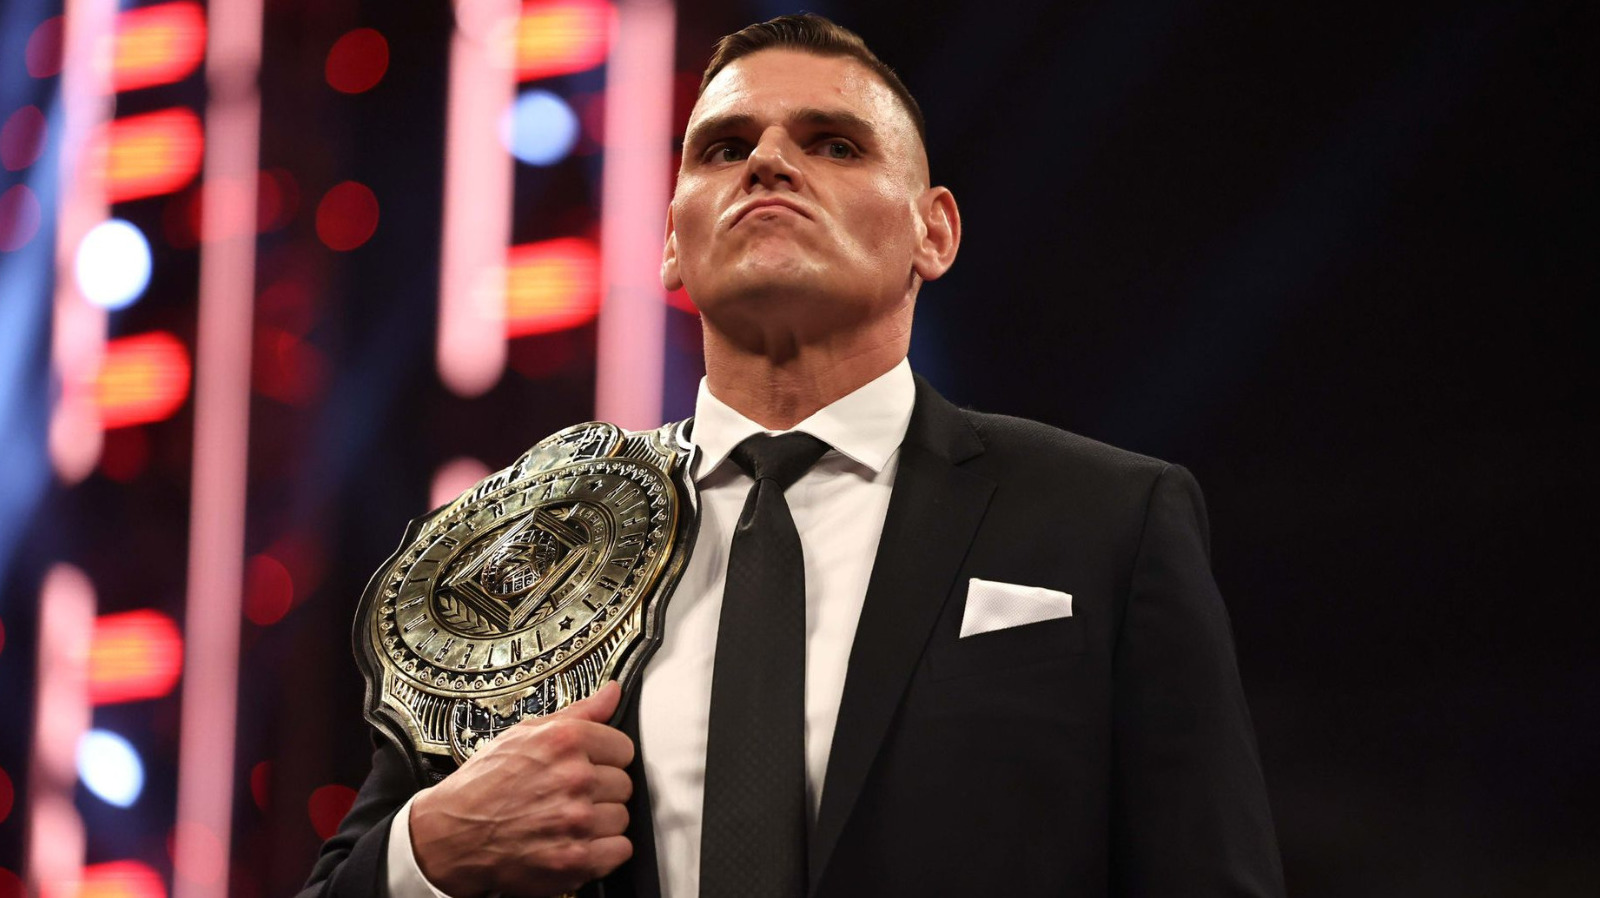 GUNTHER nombra sus defensas favoritas del título intercontinental en la WWE